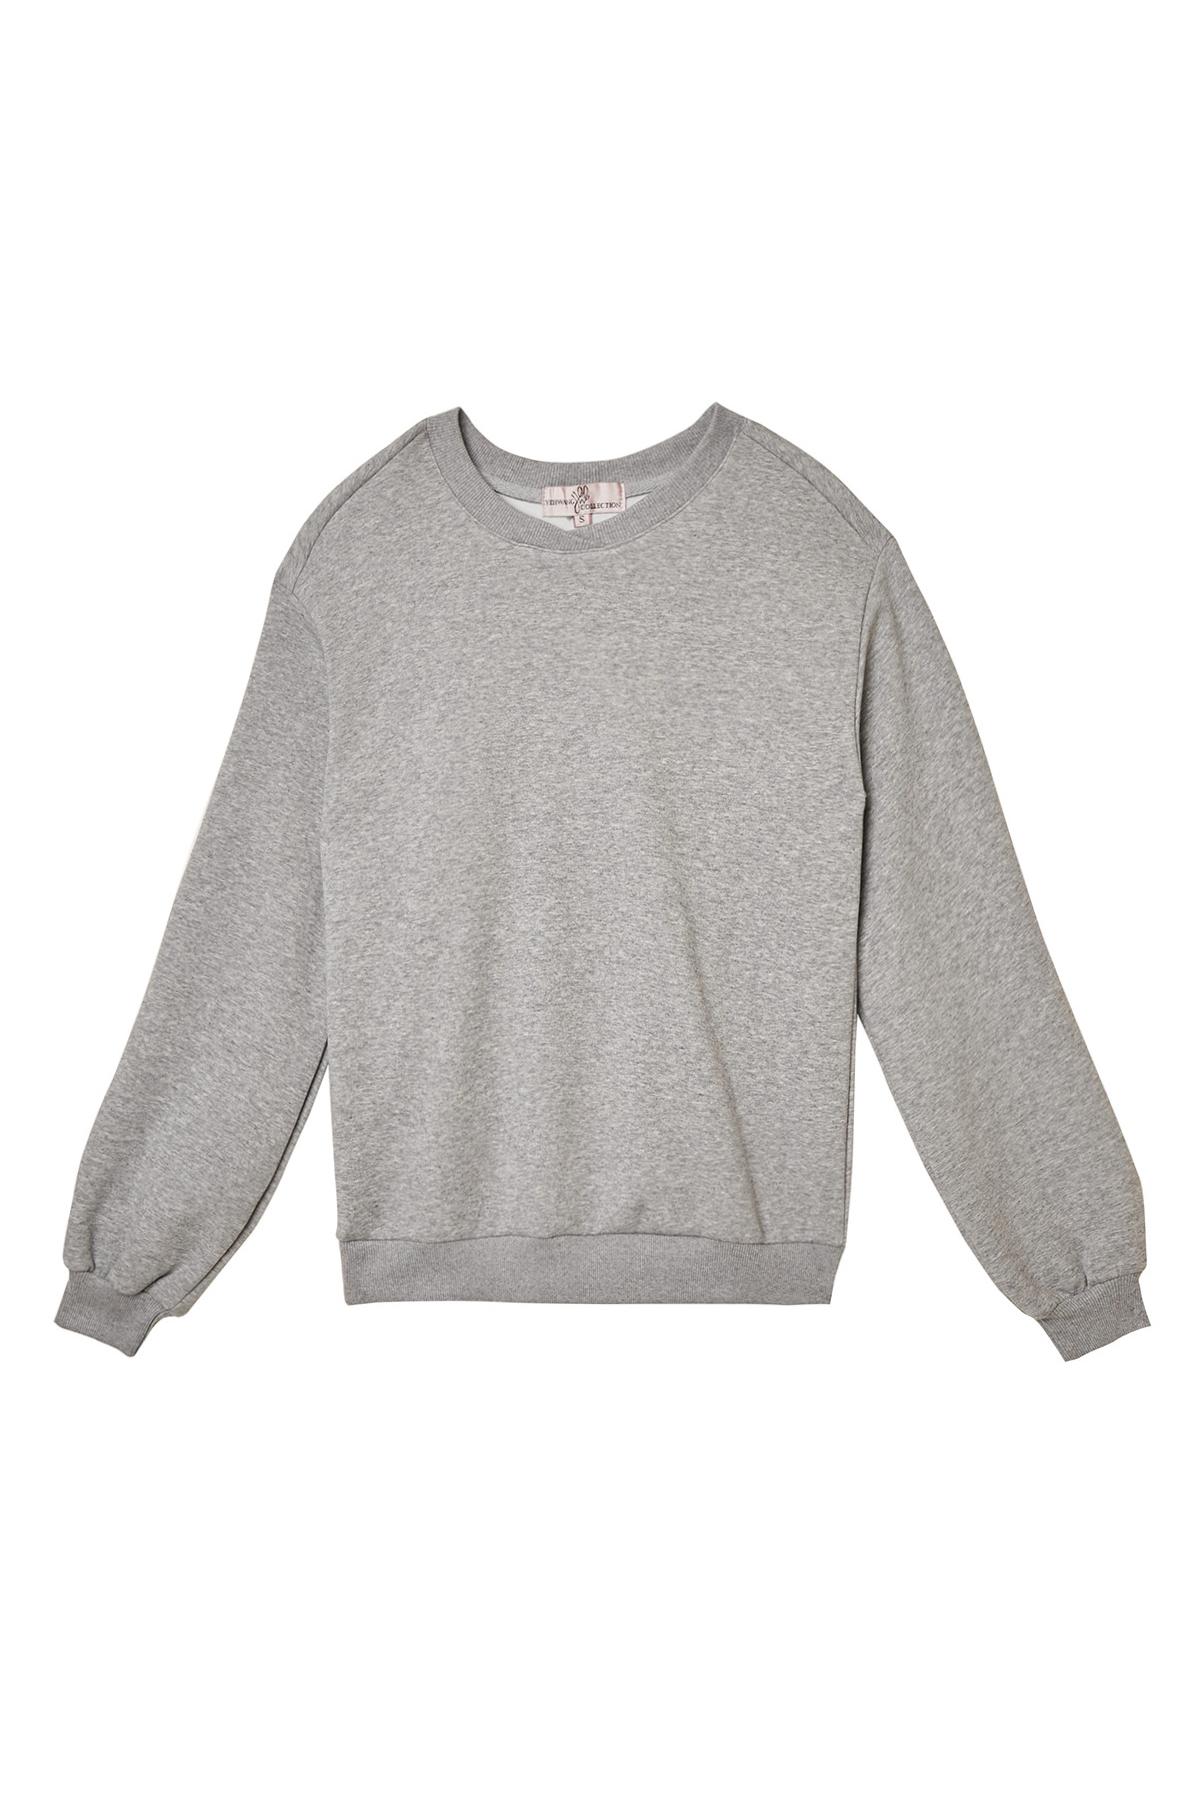 Bequeme Pullover-Loungewear Grau XL